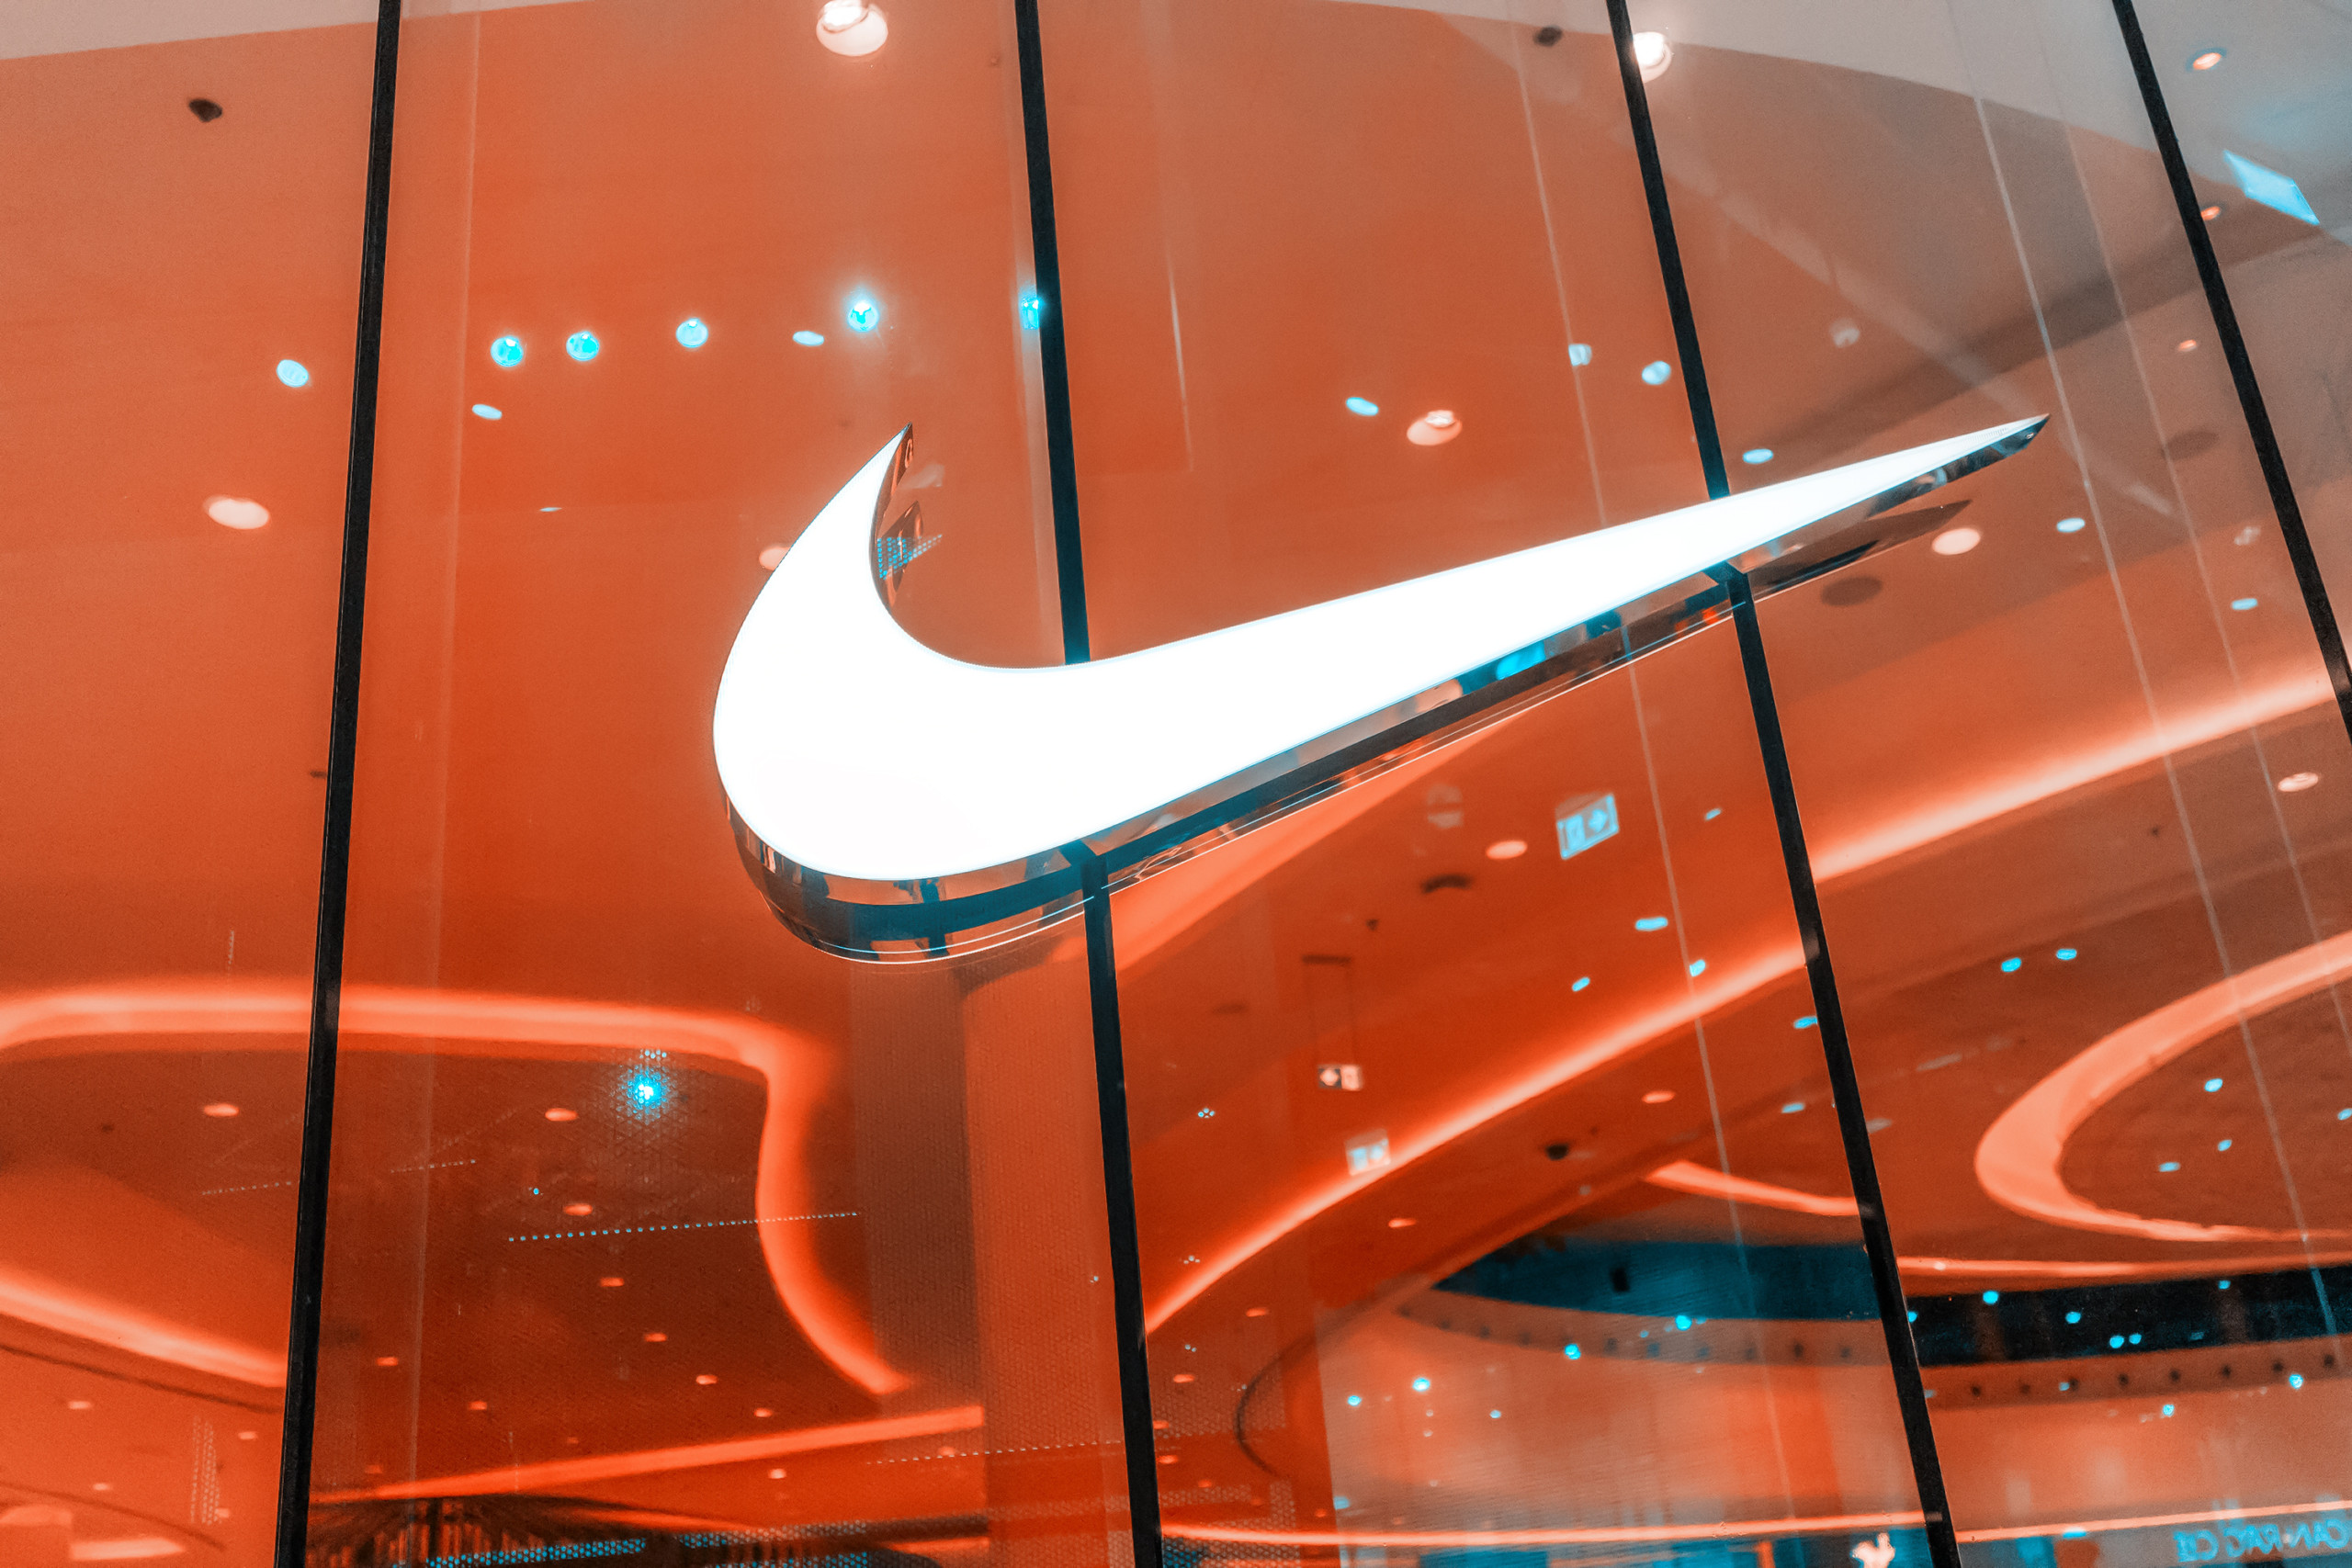 Nike senkt Umsatzprognose und kündigt Kostensenkungen von bis zu 2 Mrd. USD an